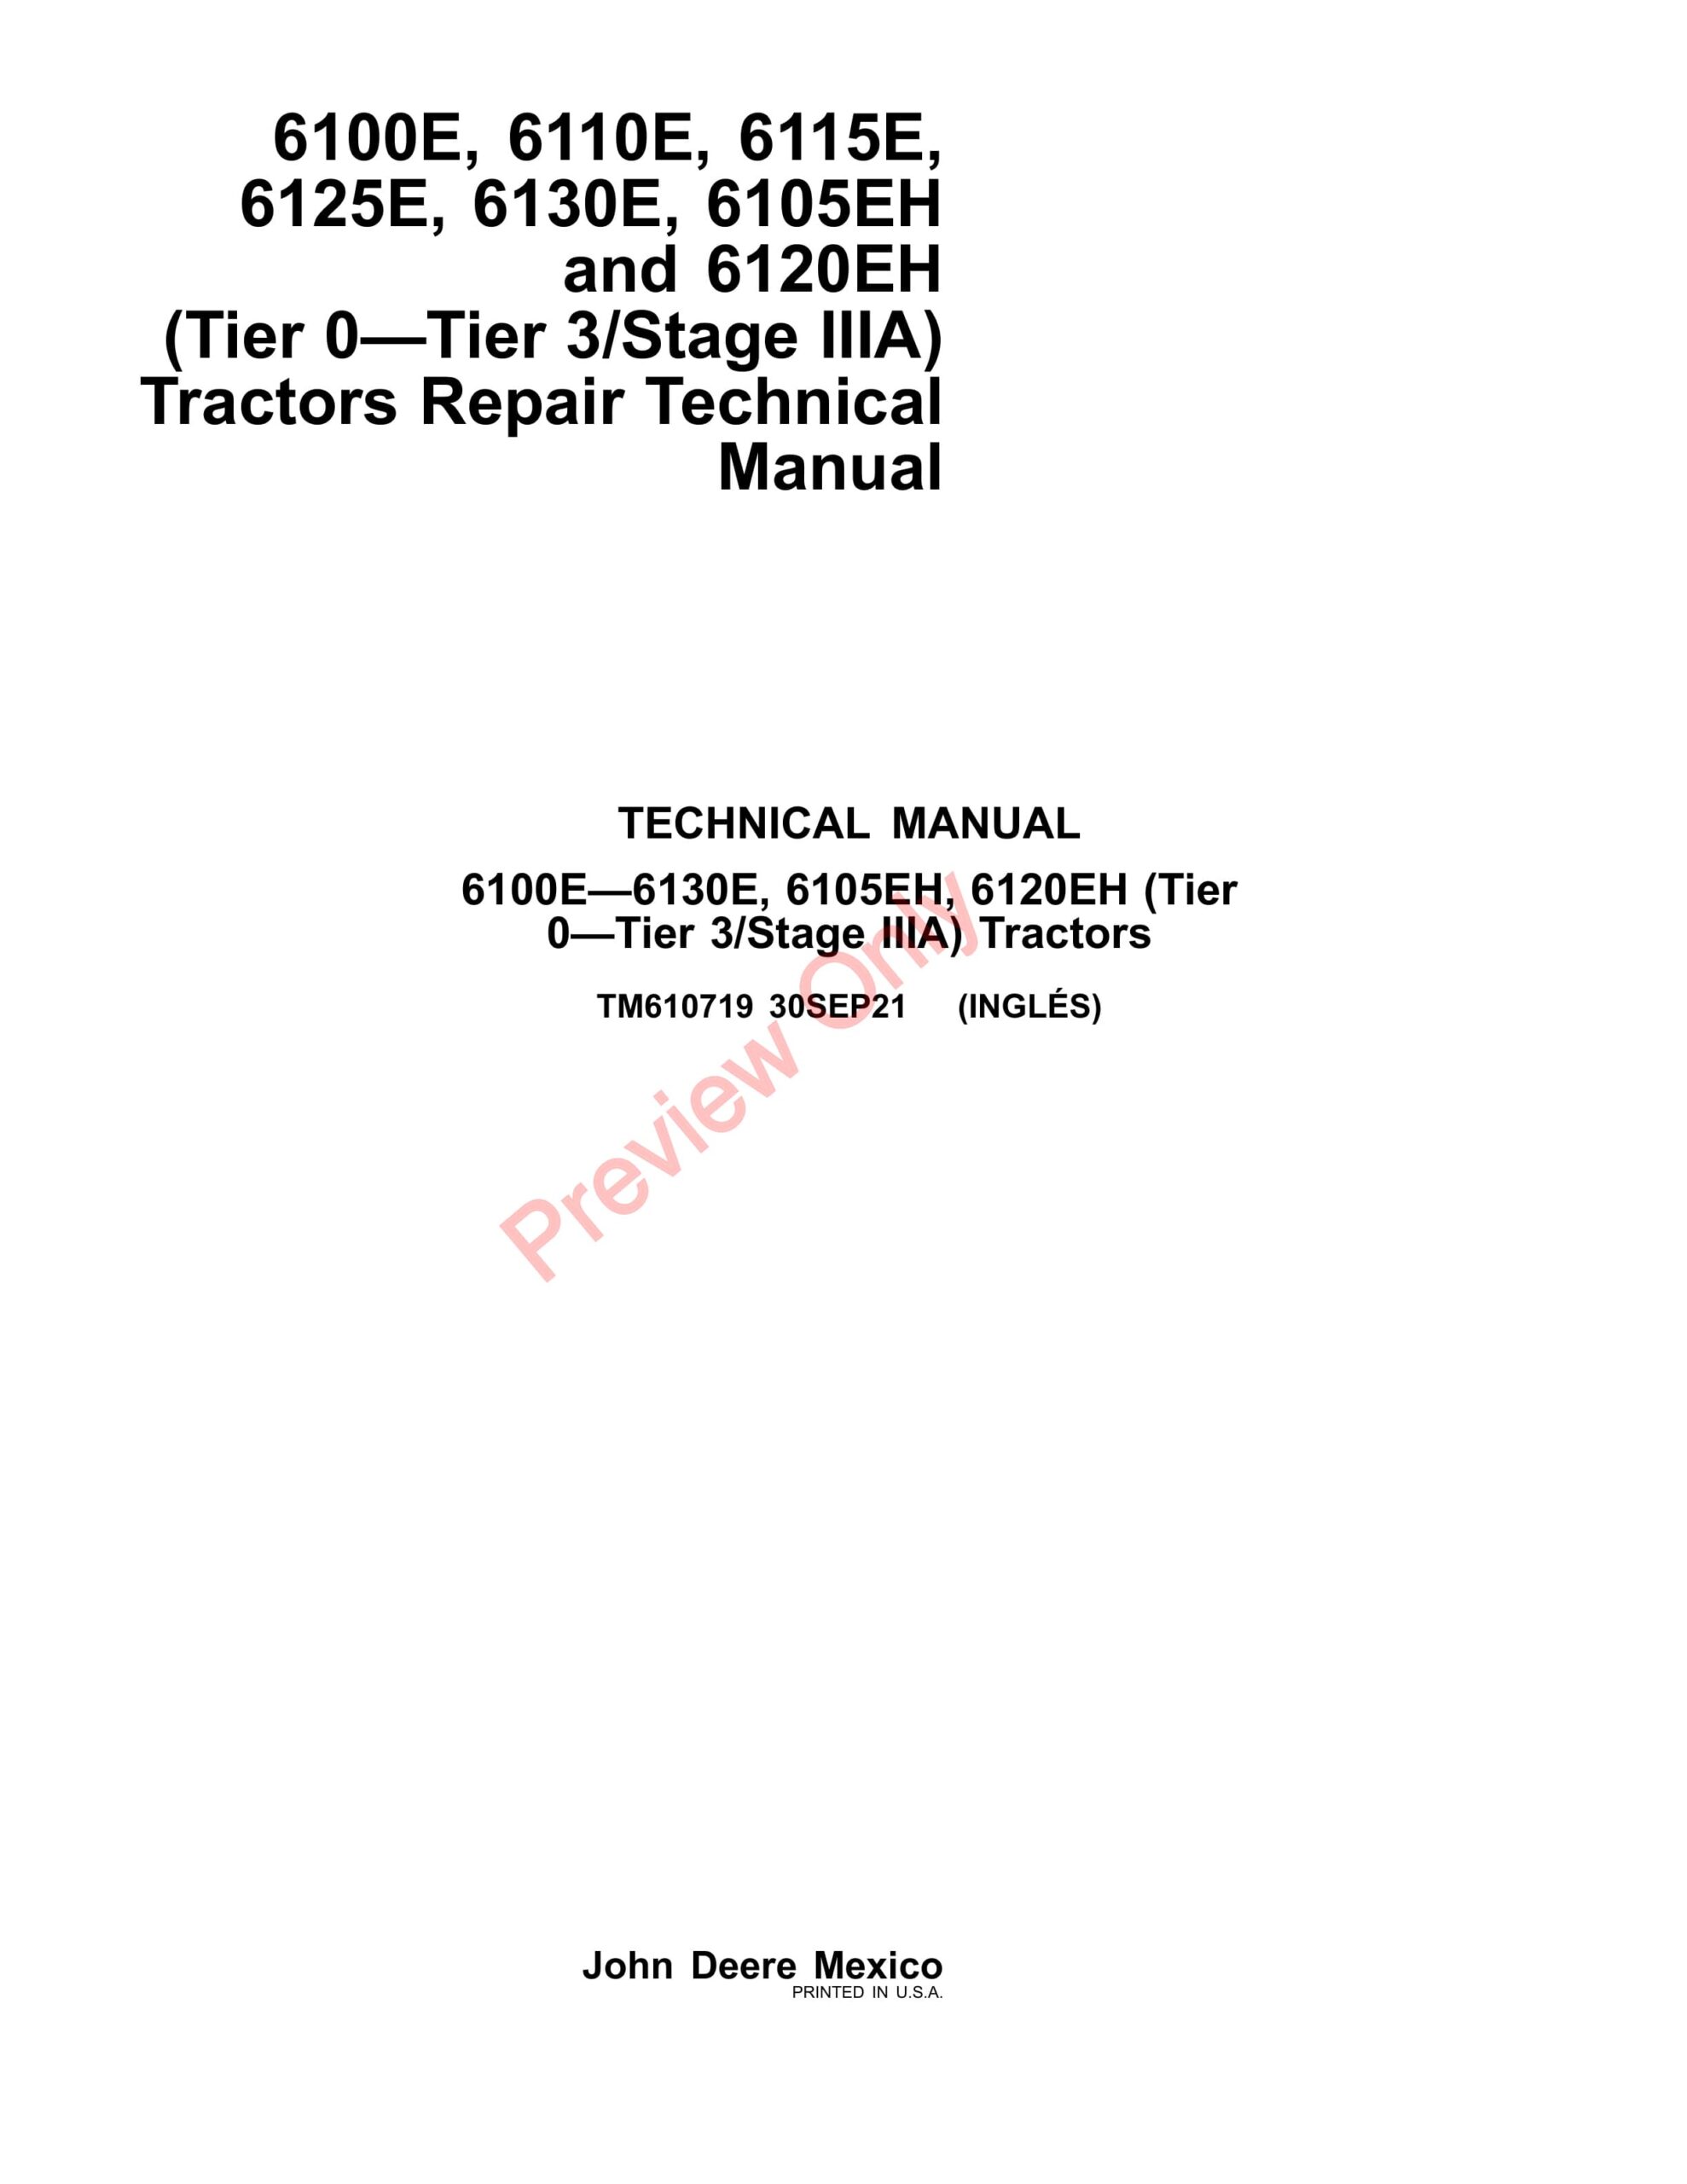 John Deere 6100E, 6110E, 6115E, 6125E, 6130E, 6105EH and 6120EH(Tier 0—Tier 3Stage IIIA)Tractors Technical Manual TM610719 30SEP21-1